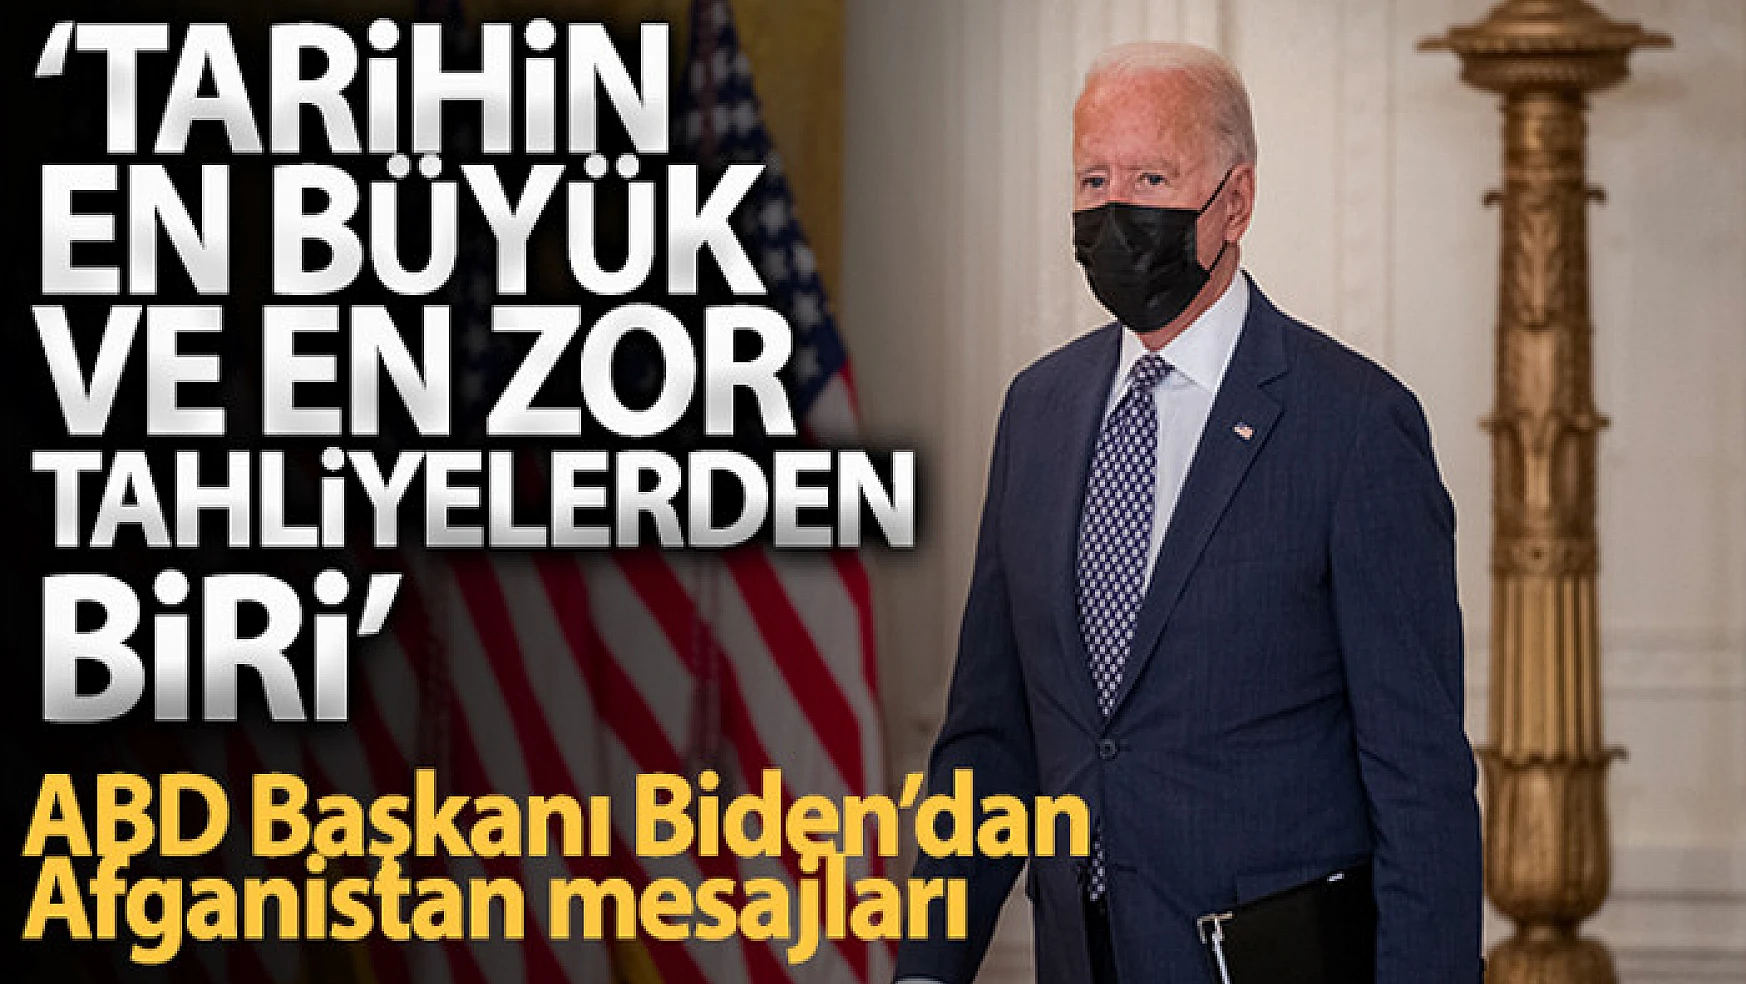 ABD başkanı Biden: 'Kabil tahliyesi tarihin en büyük ve en zor tahliyelerden biri'